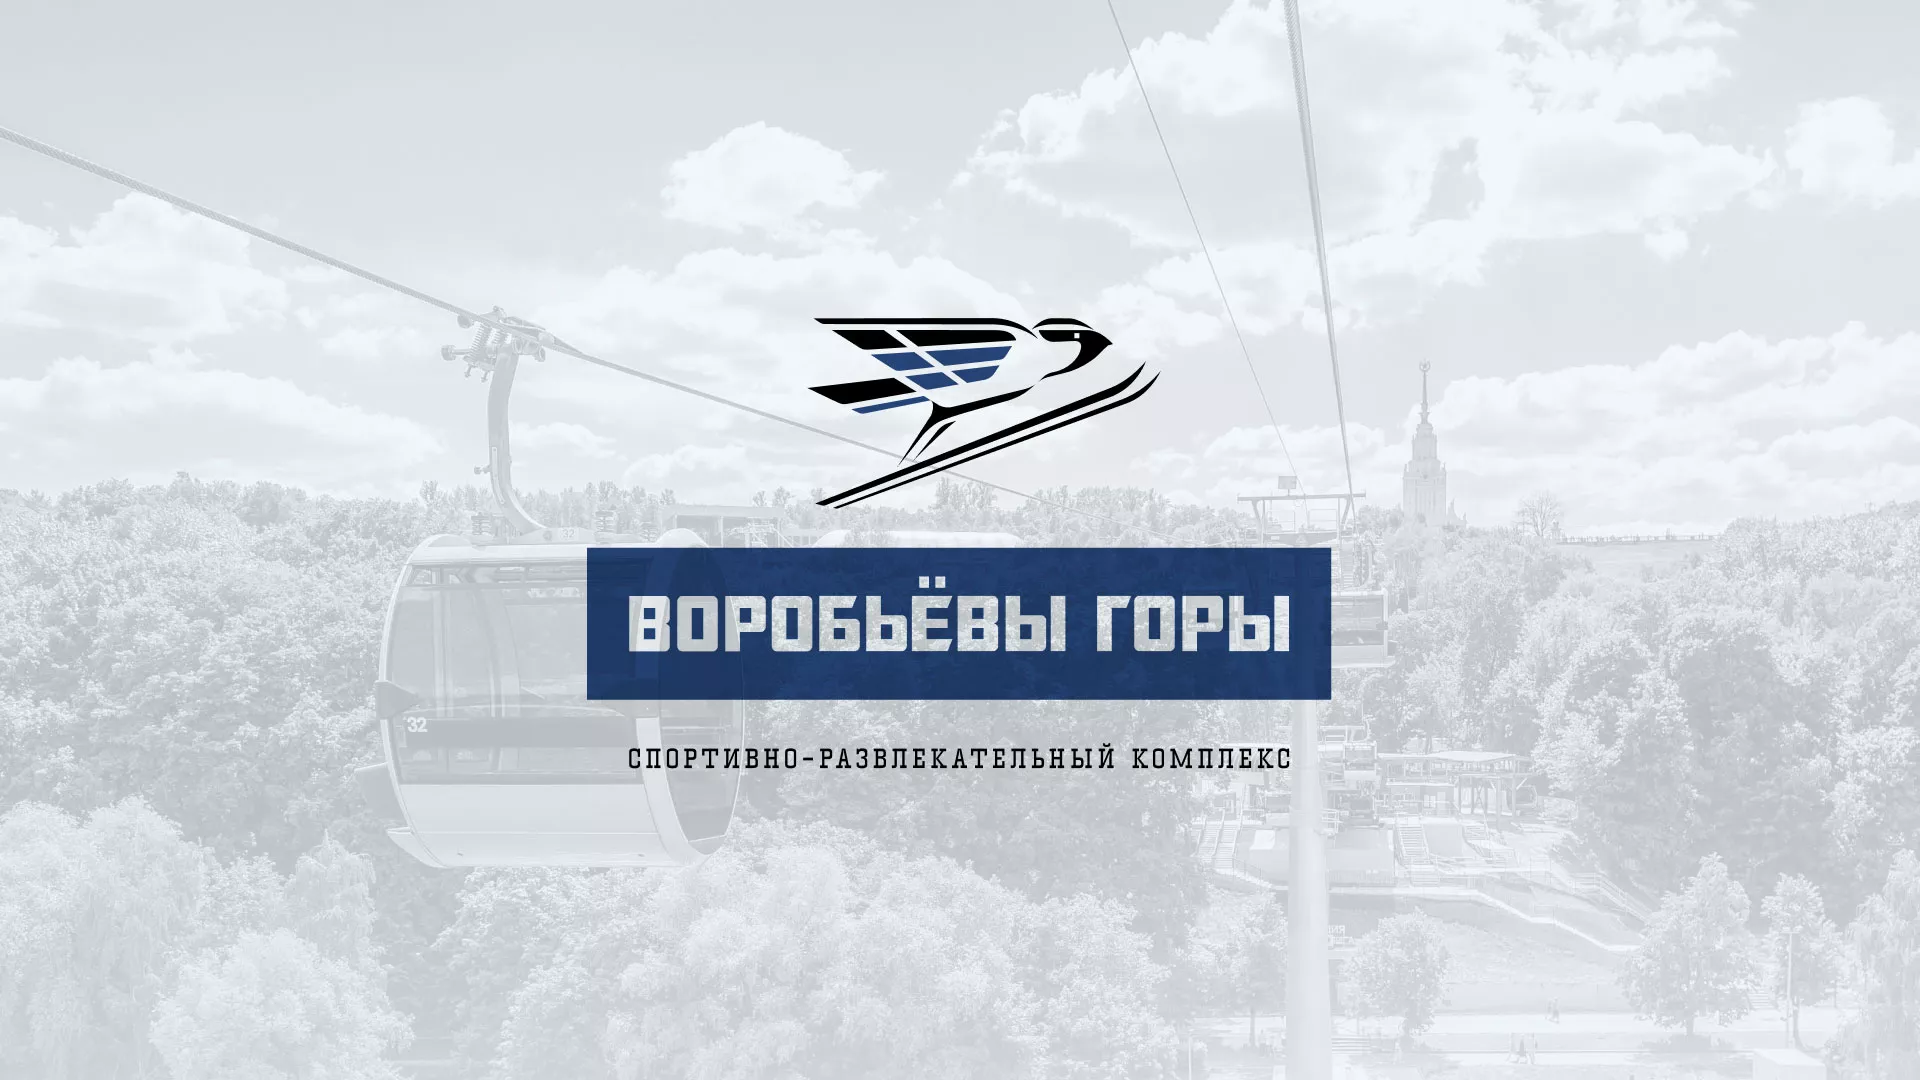 Разработка сайта в Сосенском для спортивно-развлекательного комплекса «Воробьёвы горы»